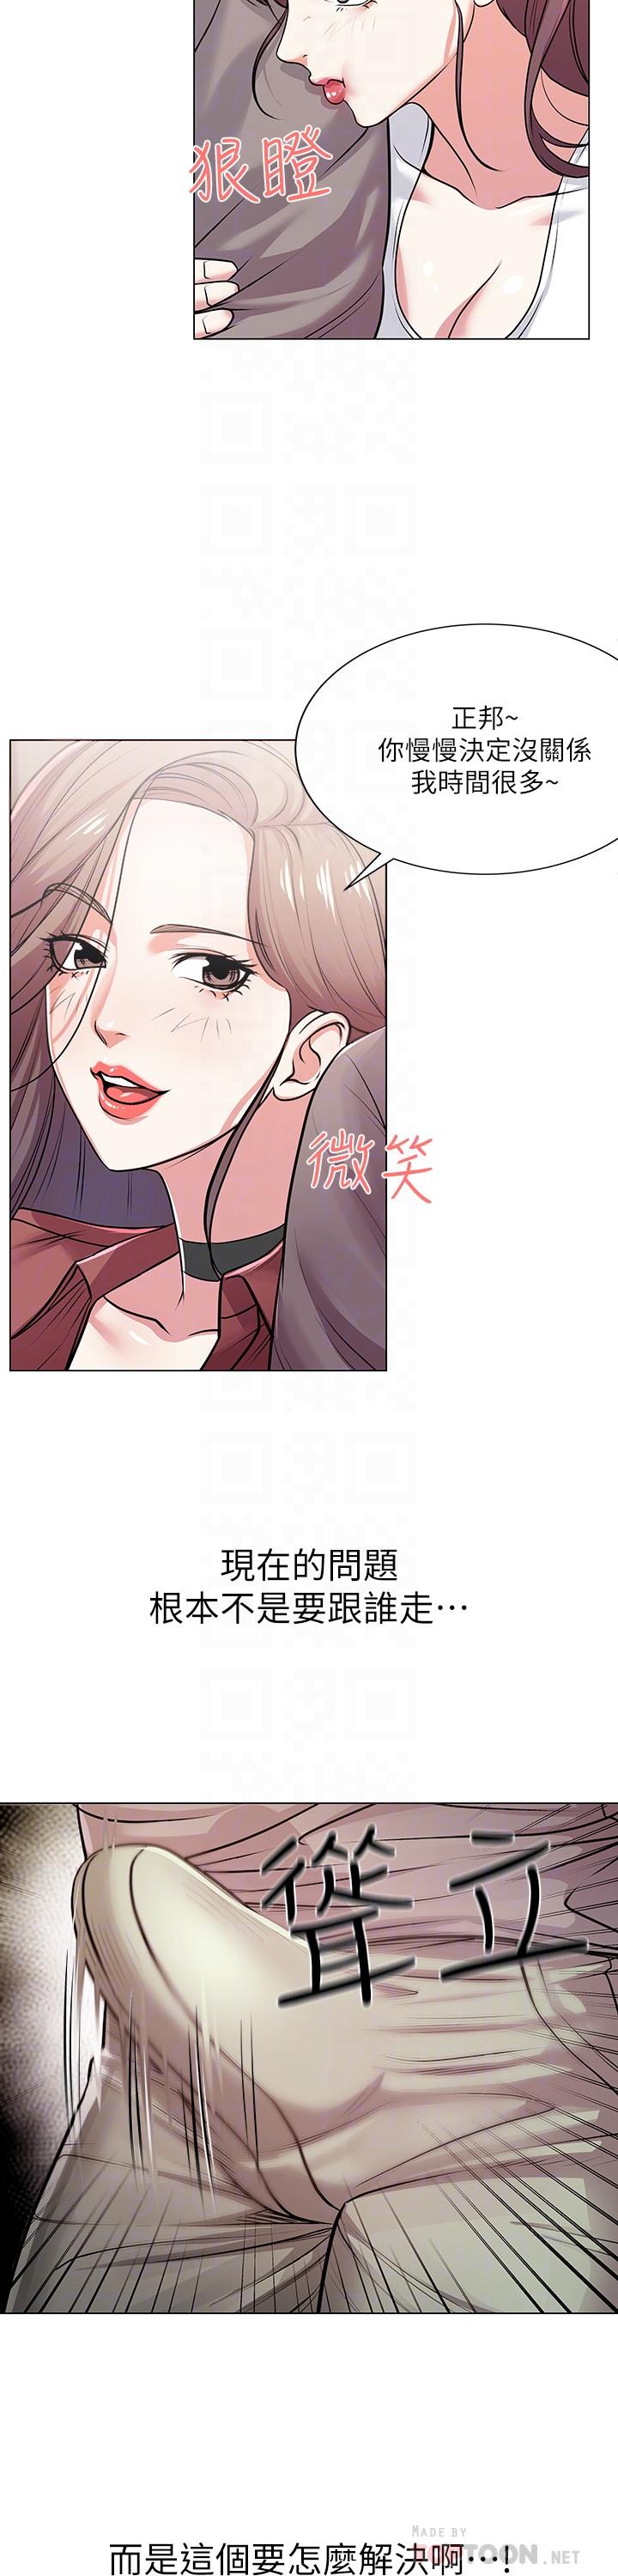 韩国污漫画 超市的漂亮姐姐 第10话-想嚐嚐看学姐的胸部 4